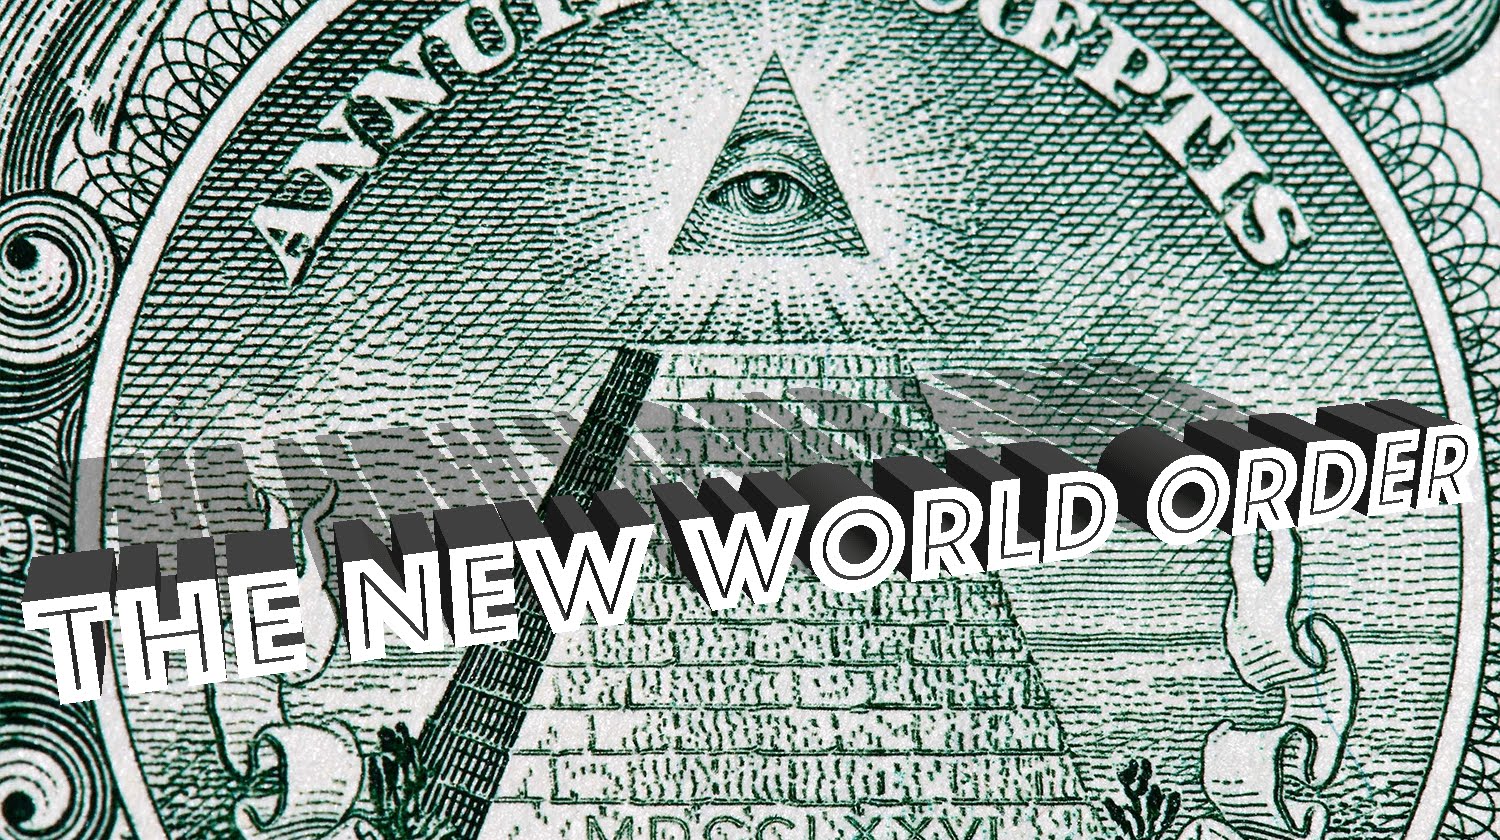 New World Order.jpg